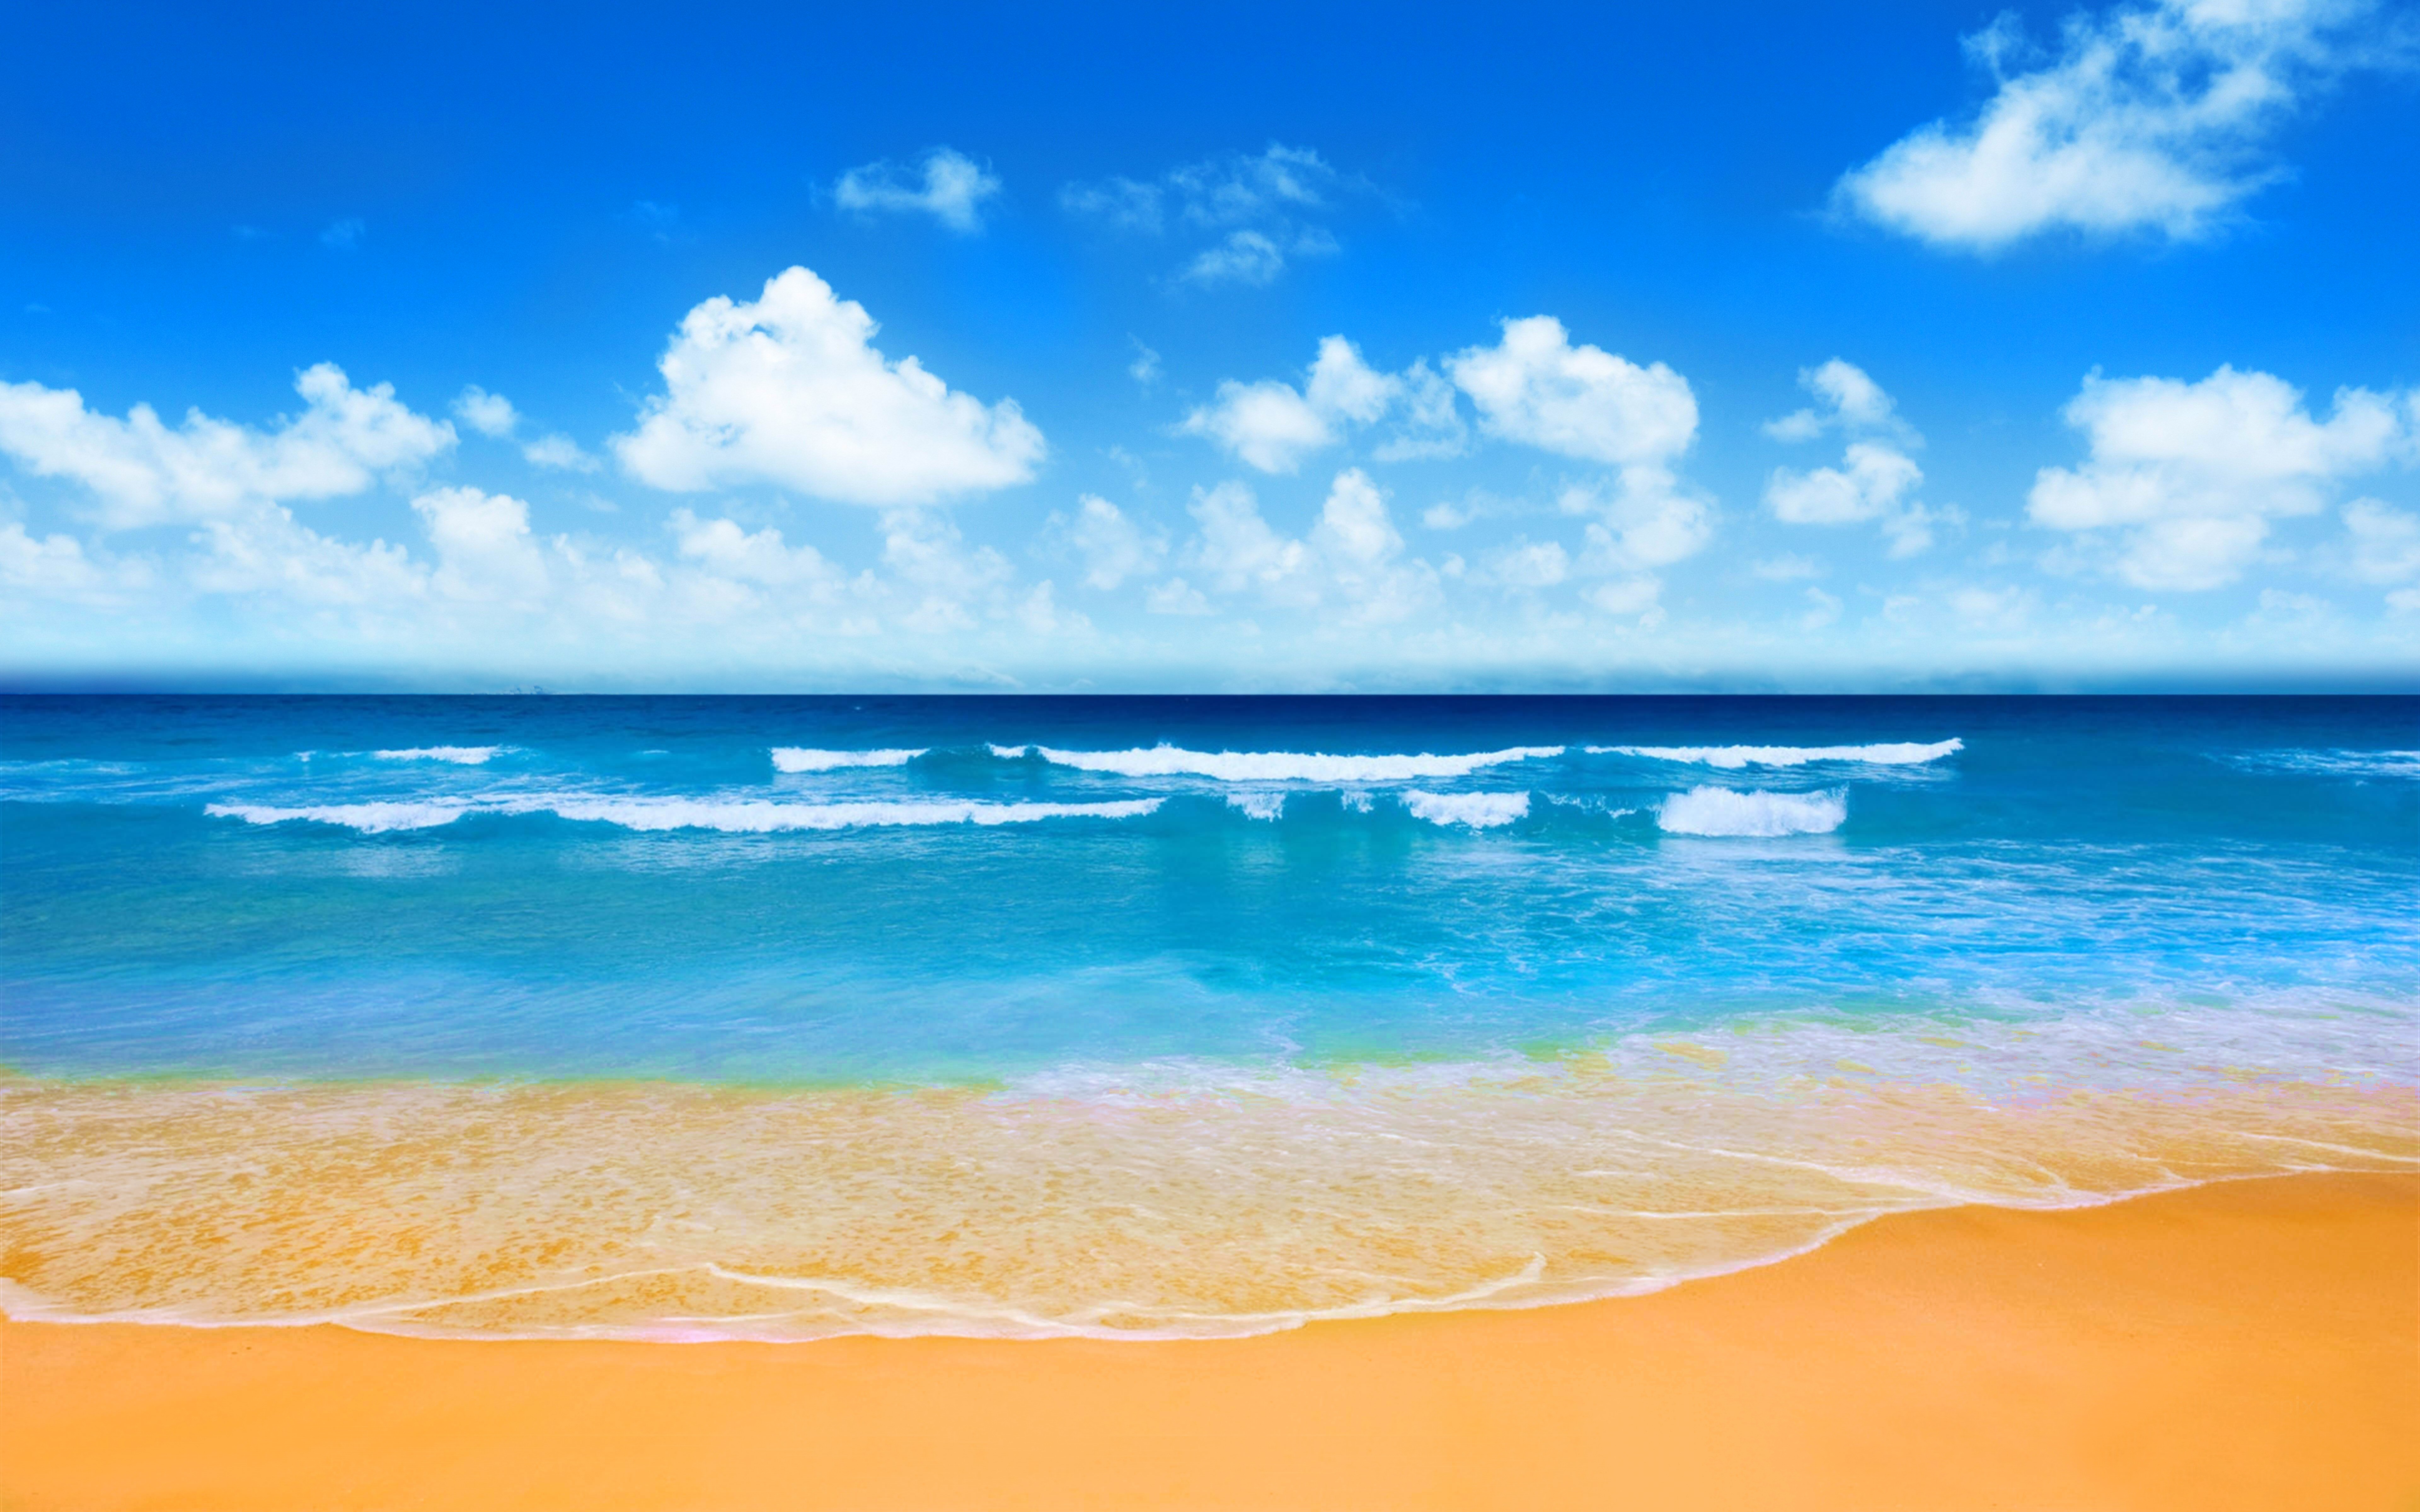 Bãi biển: Nắm tay bạn bè và gia đình, hãy cùng nhau đặt chân đến bãi biển tuyệt đẹp này. Những đợt sóng đánh tan biển cát, làn nước trong vắt và bầu trời xanh ngắt sẽ khiến bạn cảm thấy như đang sống trong bức tranh của chính mình.